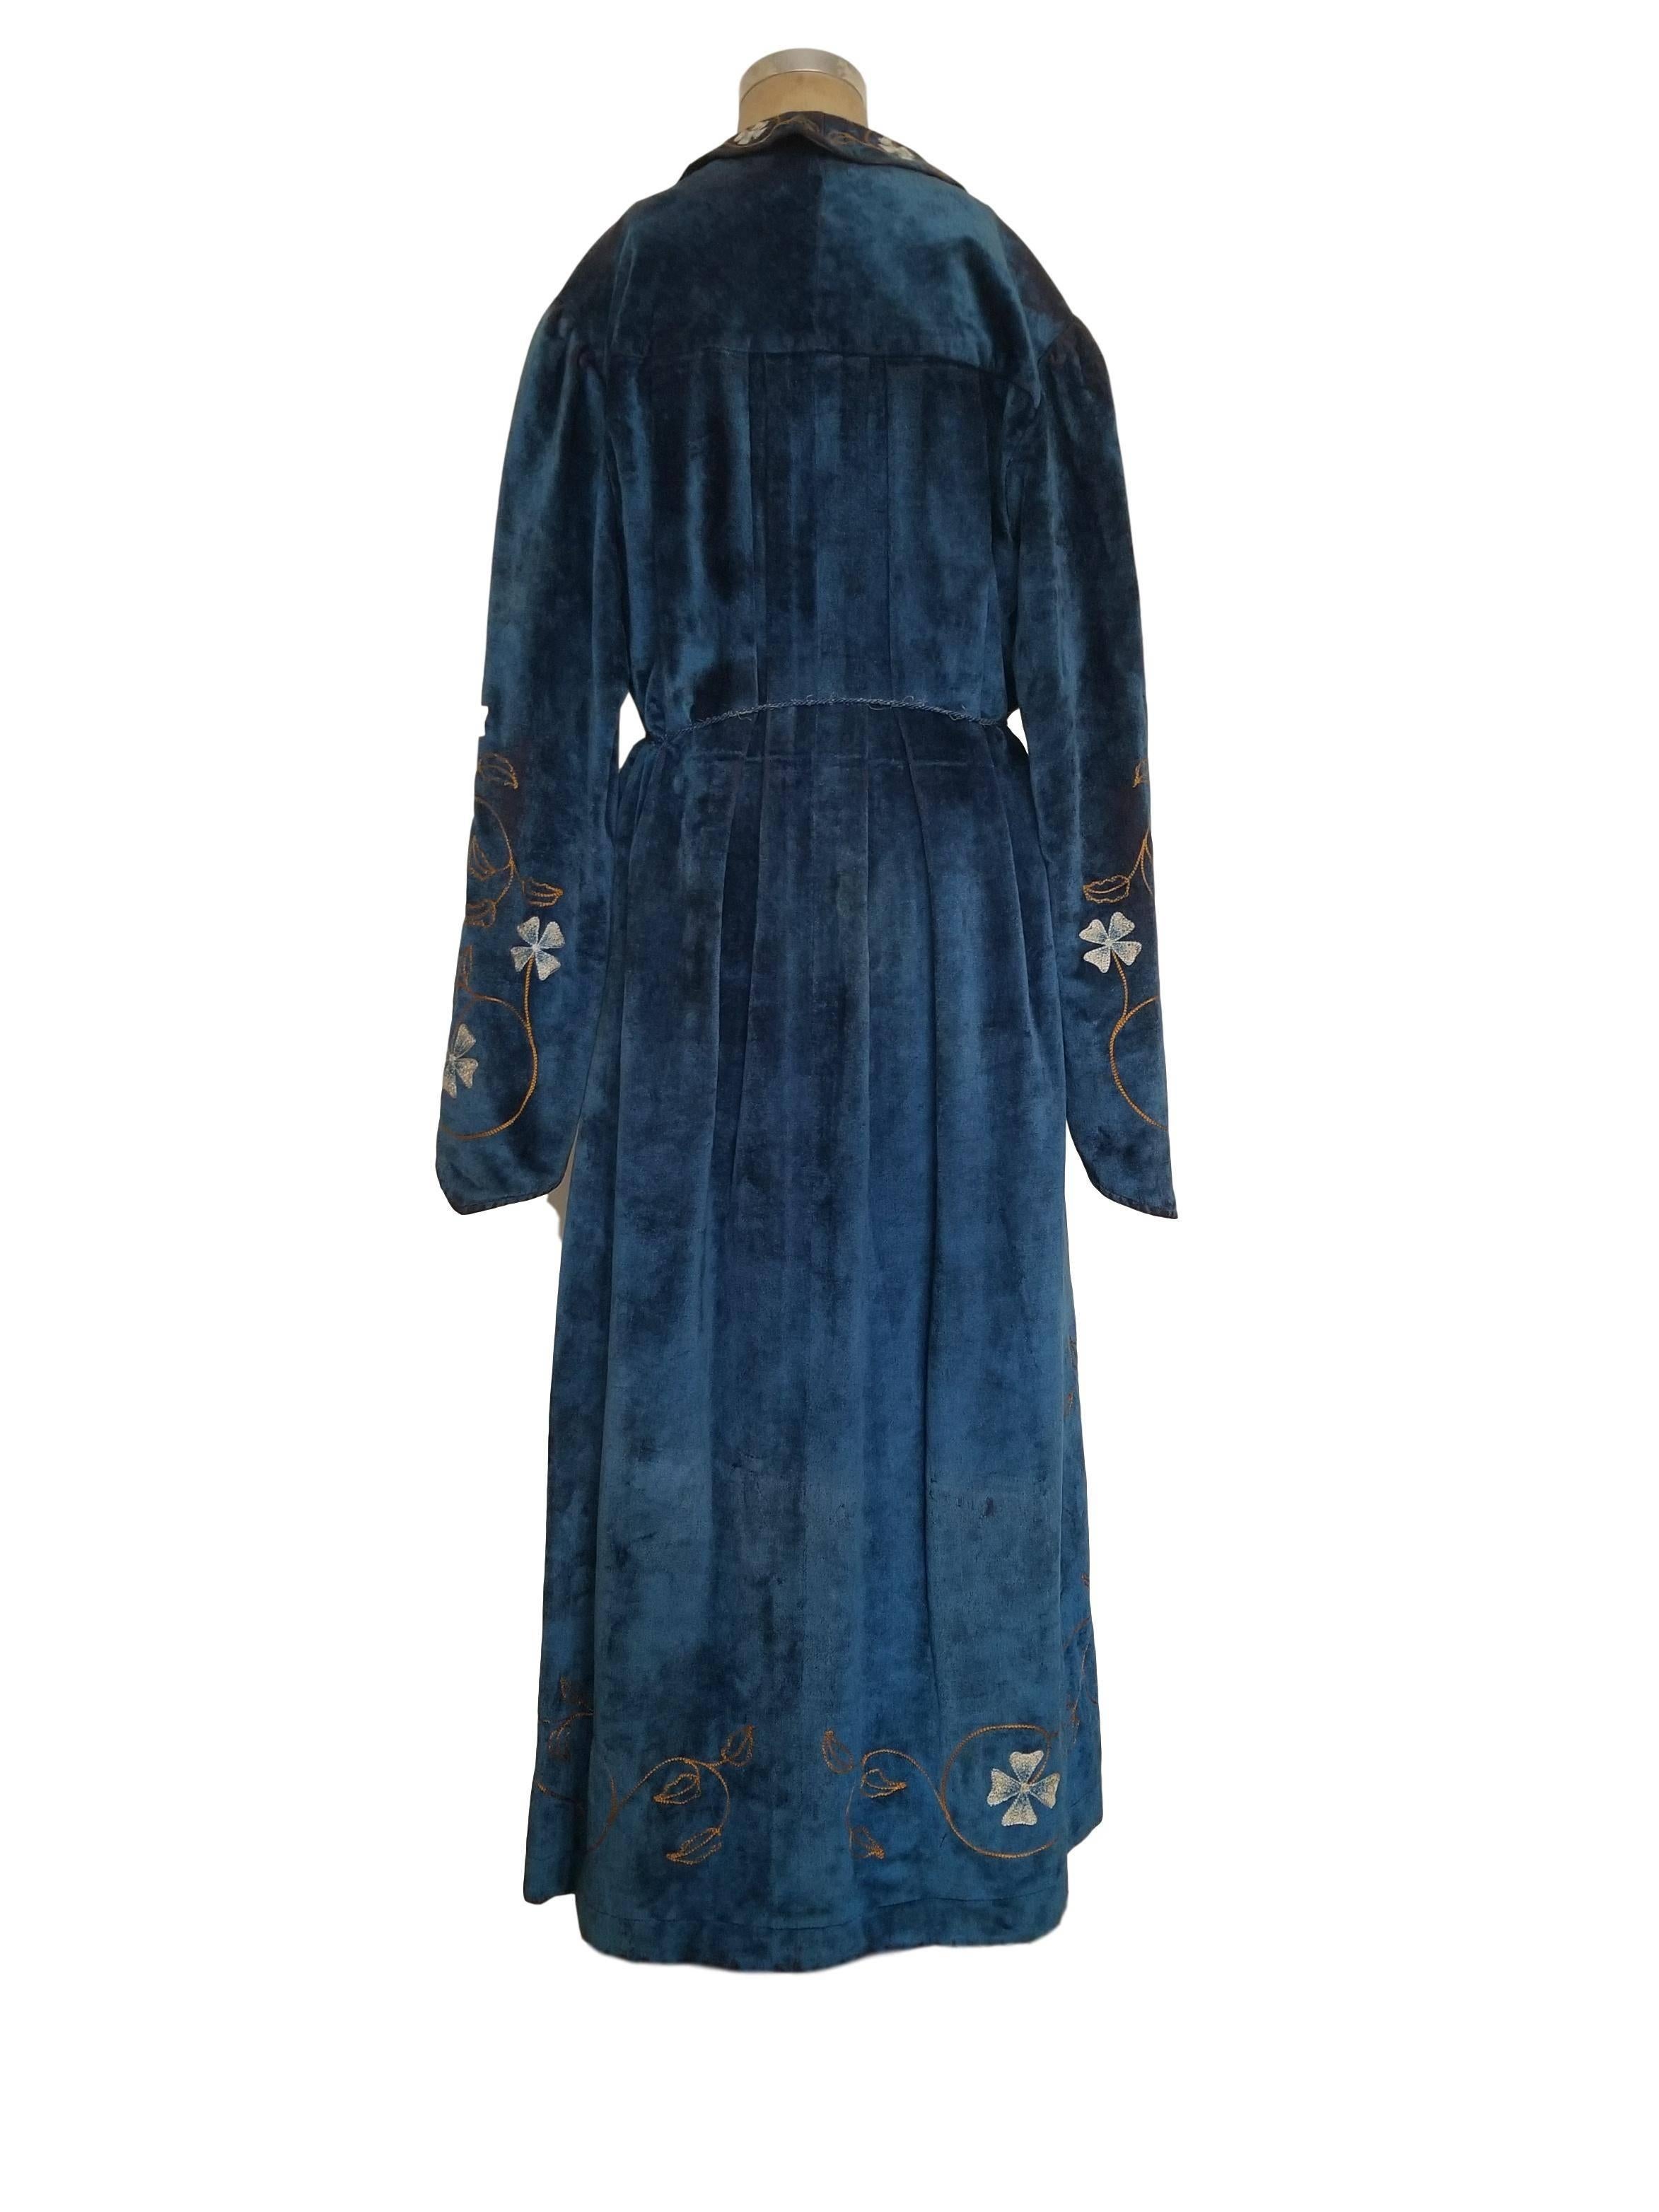 Black CE Ward Antique Edwardian Velvet Cotton Embroidered Floral Blue Coat Robe Game O